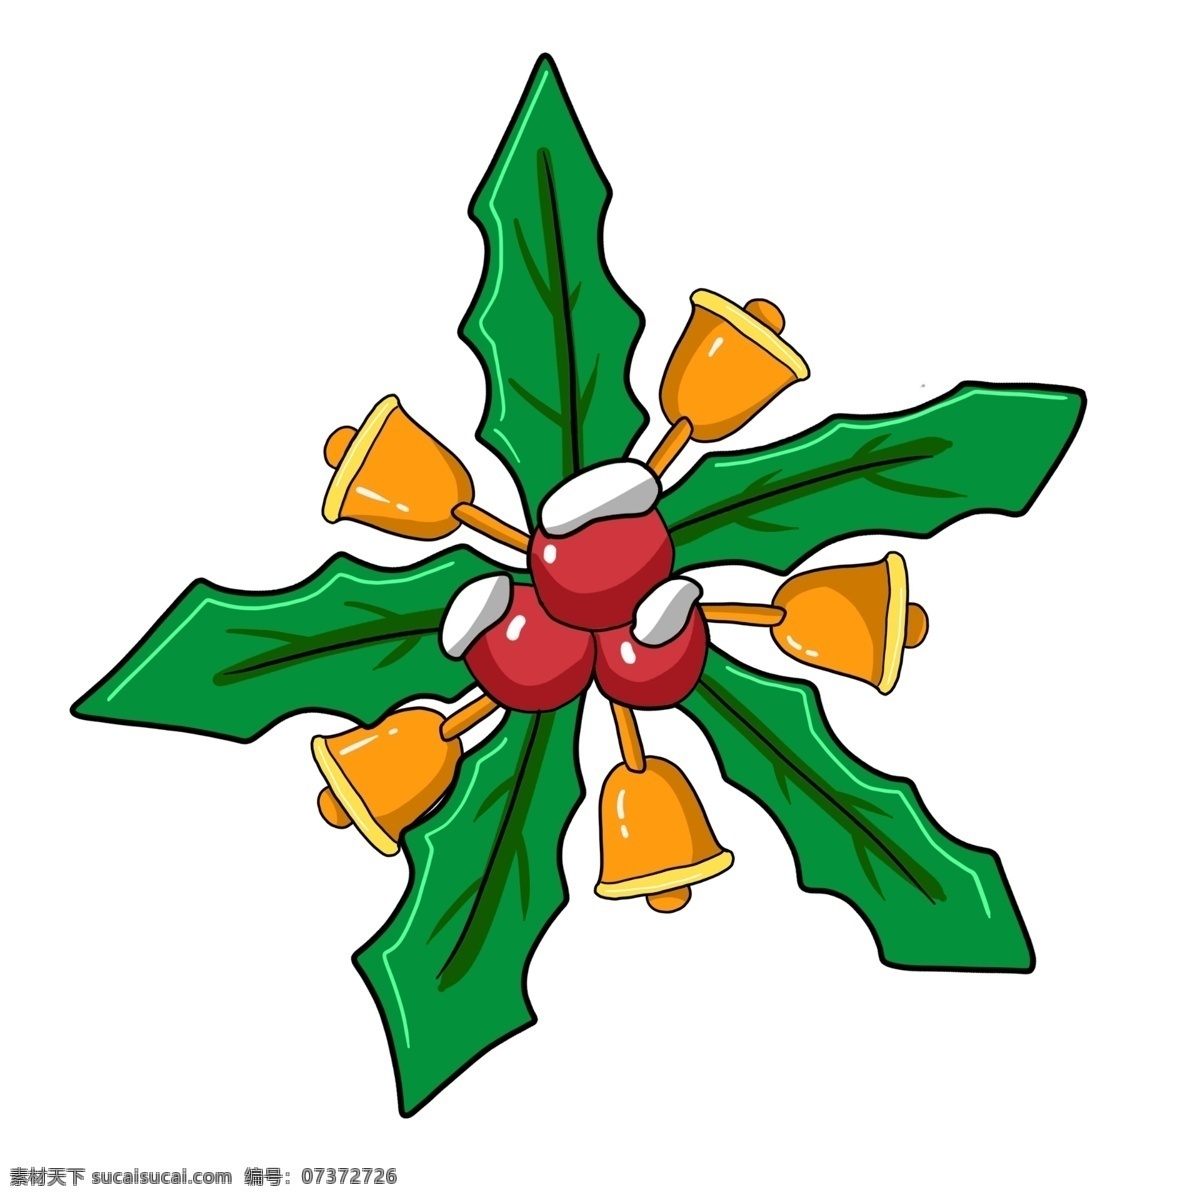 手绘 圣诞节 装饰 铜 铃铛 绿 草 铜铃铛绿草 西方节日 宗教节日 圣诞 红果绿叶 卡通铃铛插画